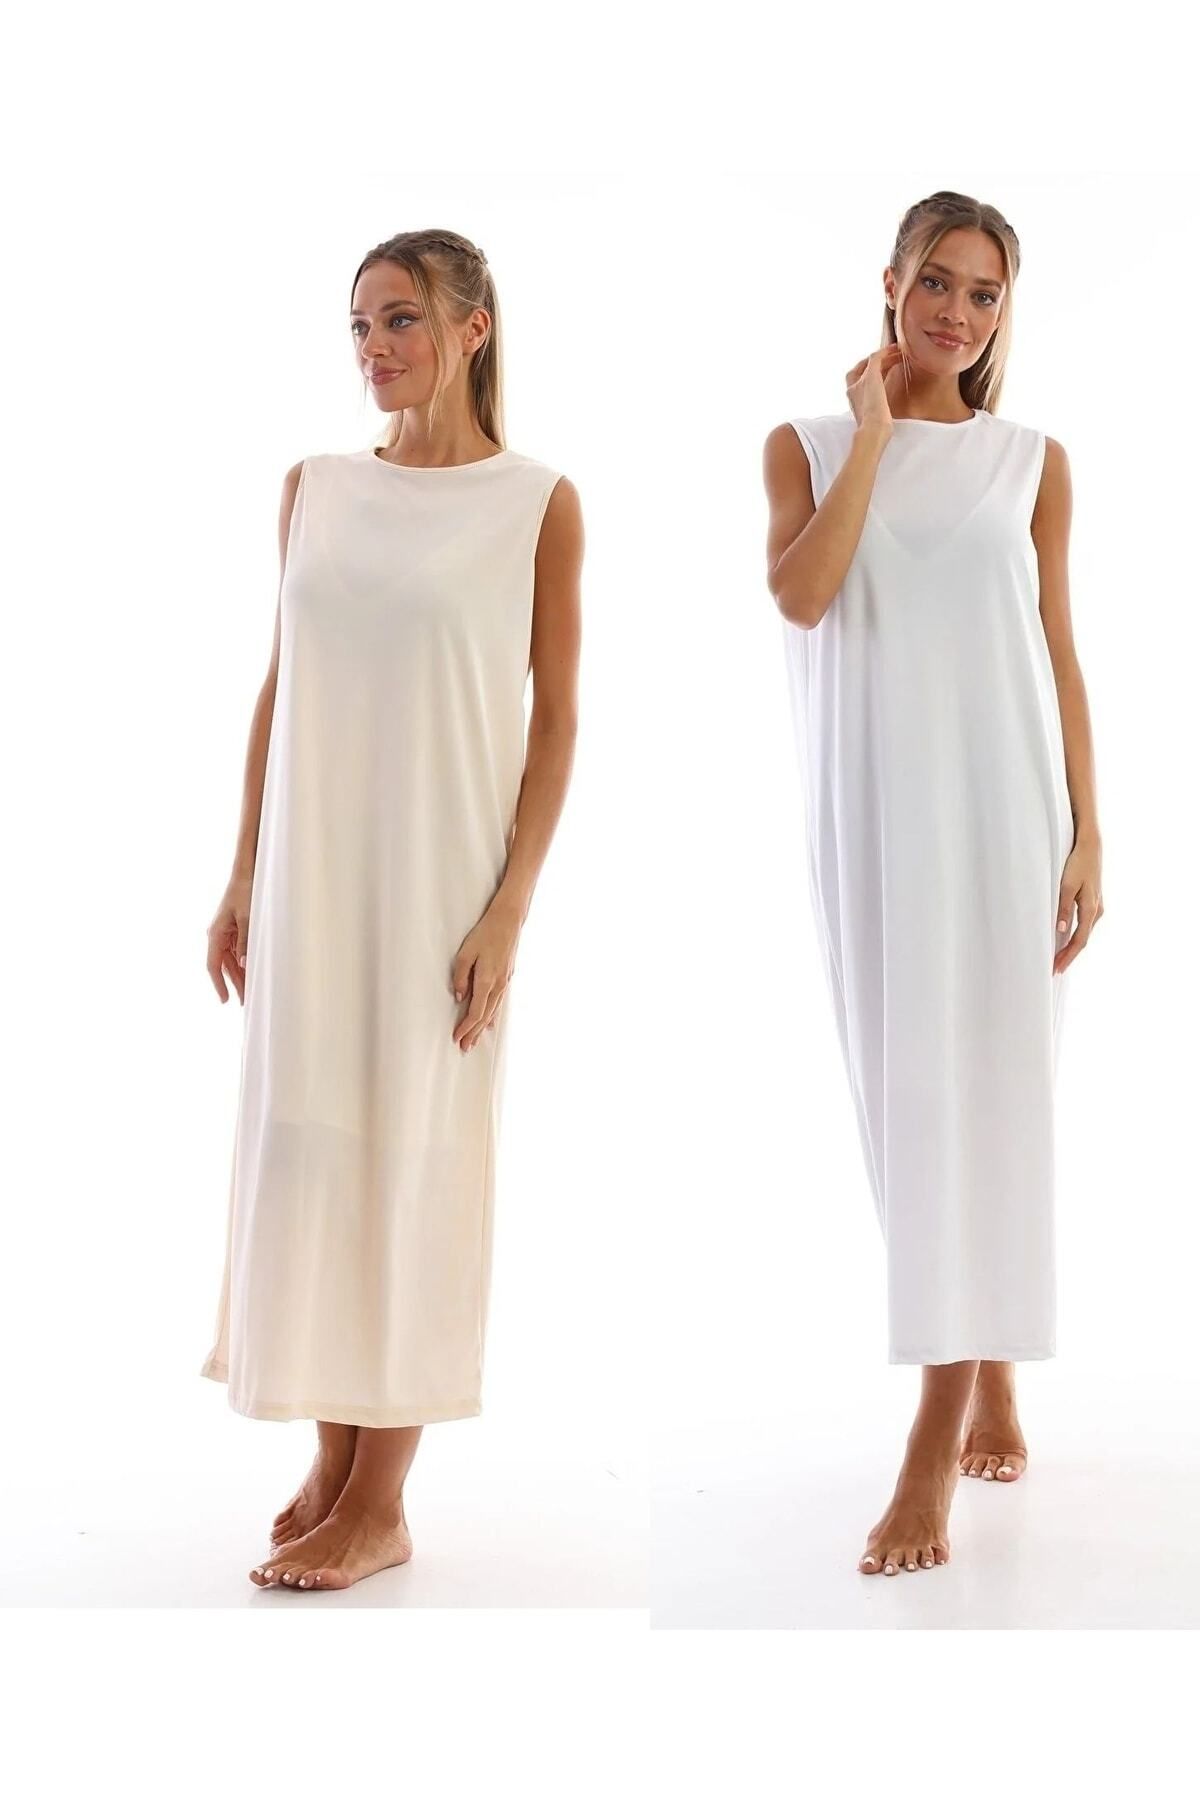 medipek Kolsuz Elbise Astarı Içlik Jupon Beyaz Bej 2li Set